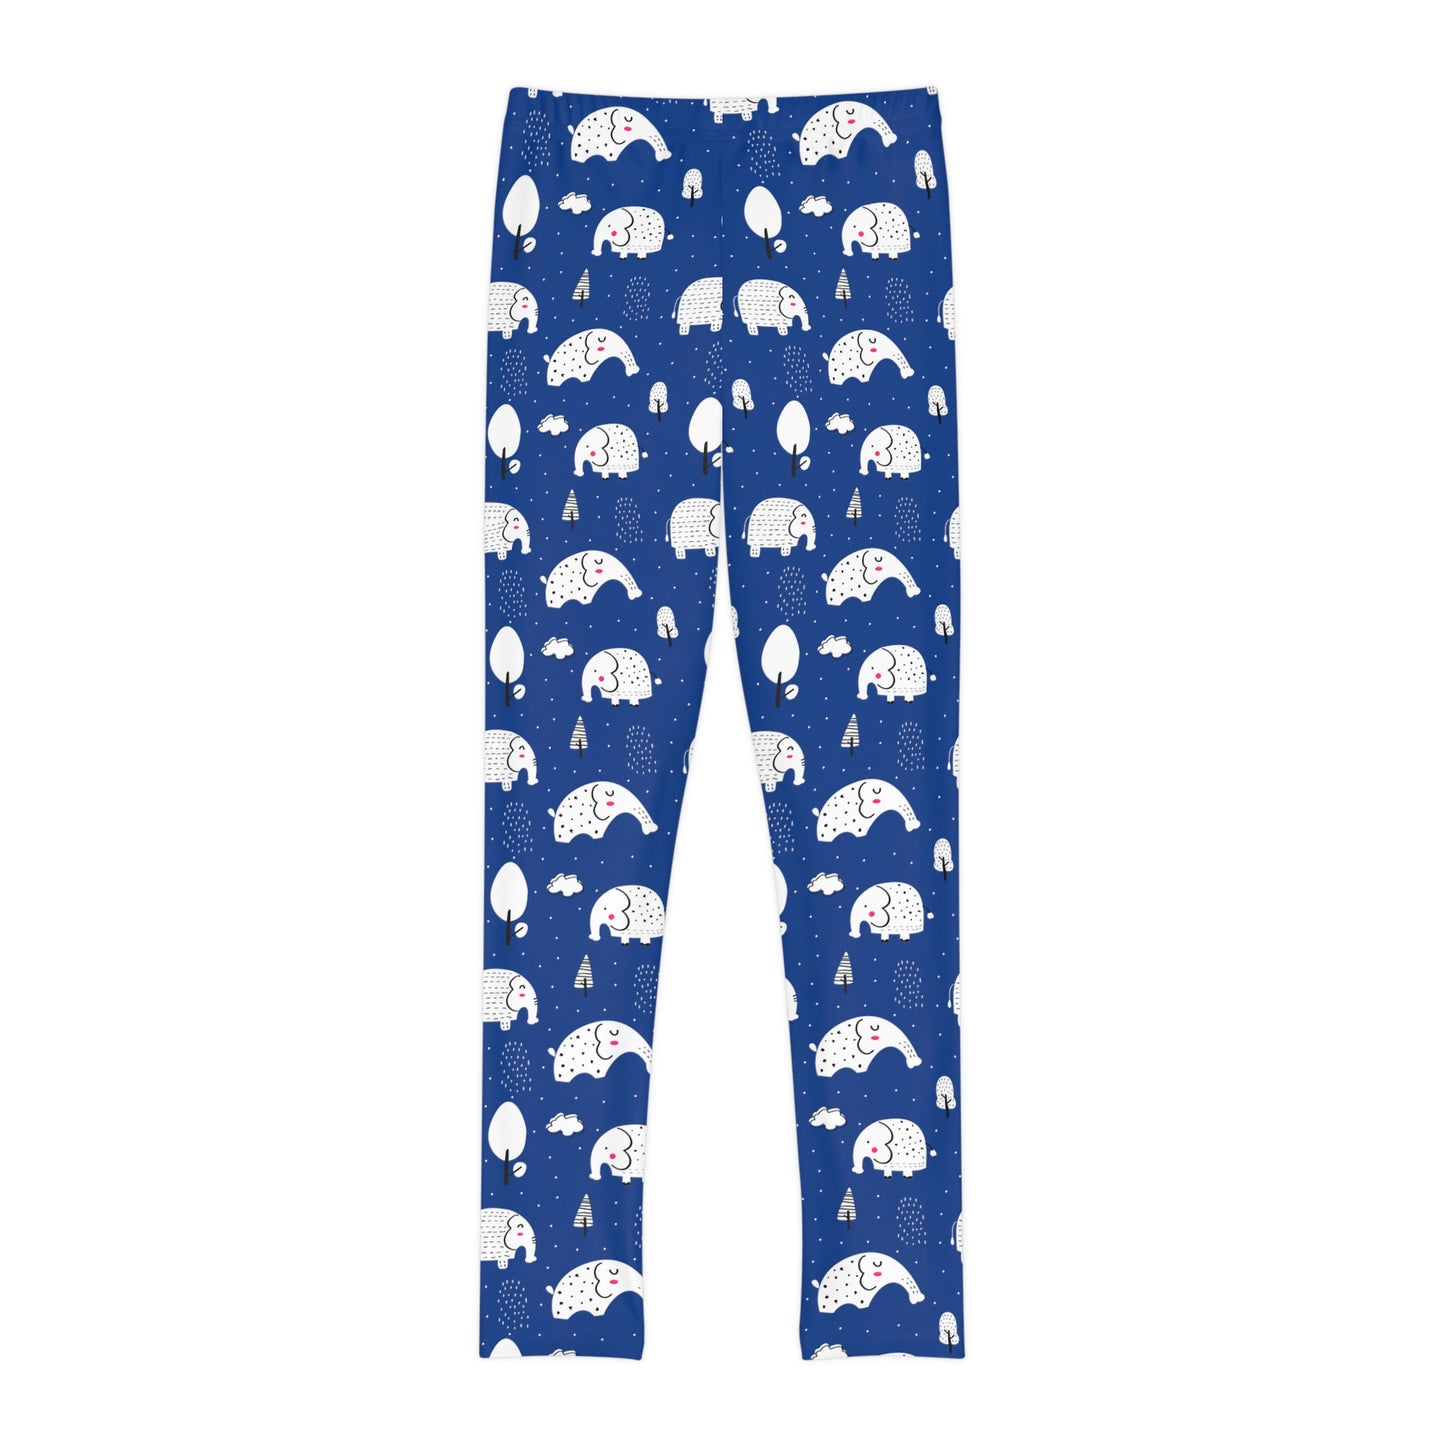 Blue Elephant Youth Full-Length Leggings, Elephant Print Leggings, Animal Lovers Leggings, Safari Kids Leggings